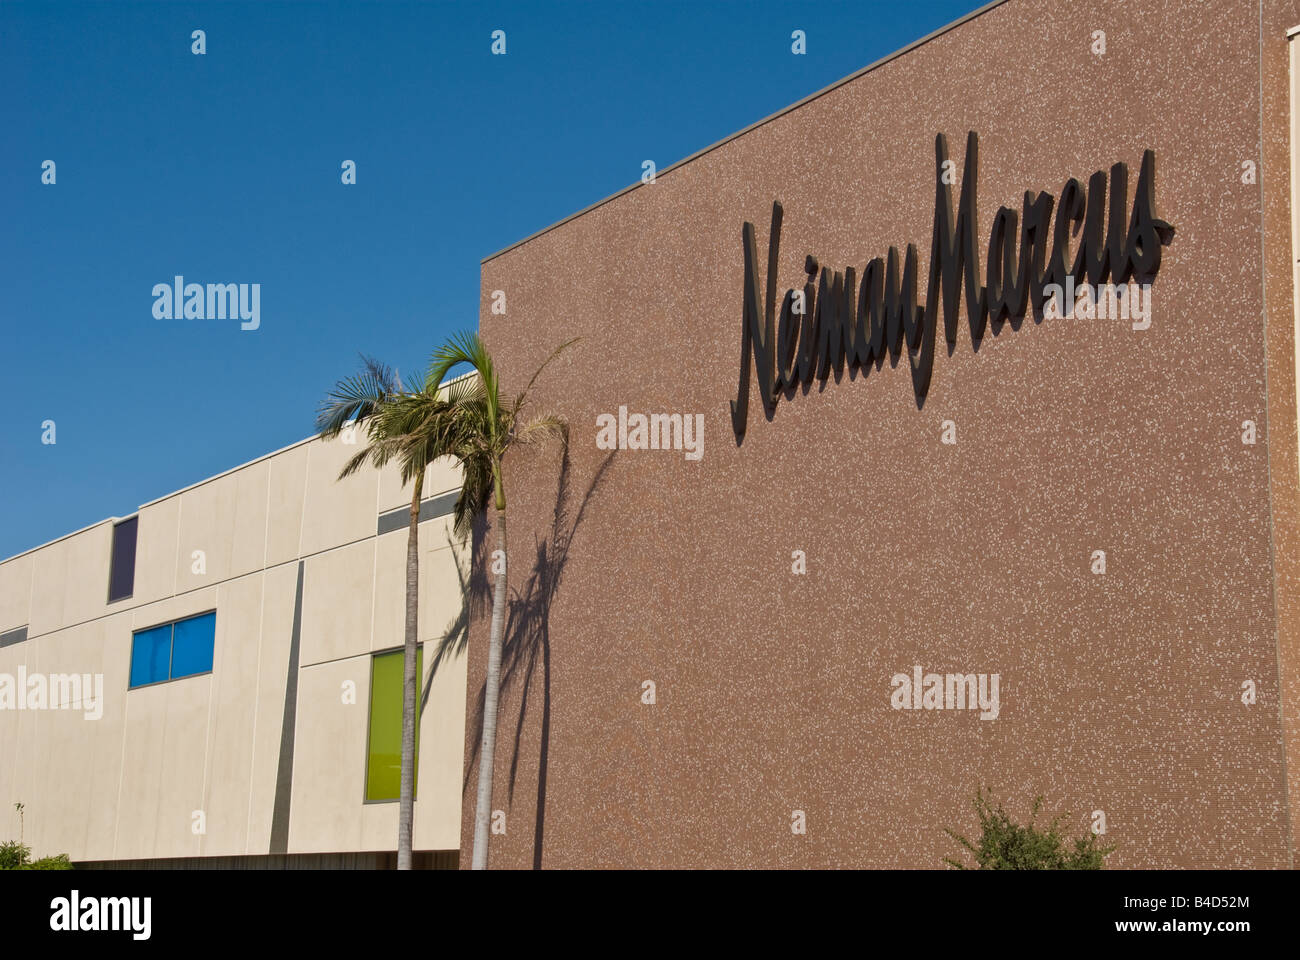 Haut de gamme Neiman Marcus, magasin de vente au détail spécialisés Topanga Warner Center Shopping Center Los Angeles CA USA exterior Banque D'Images